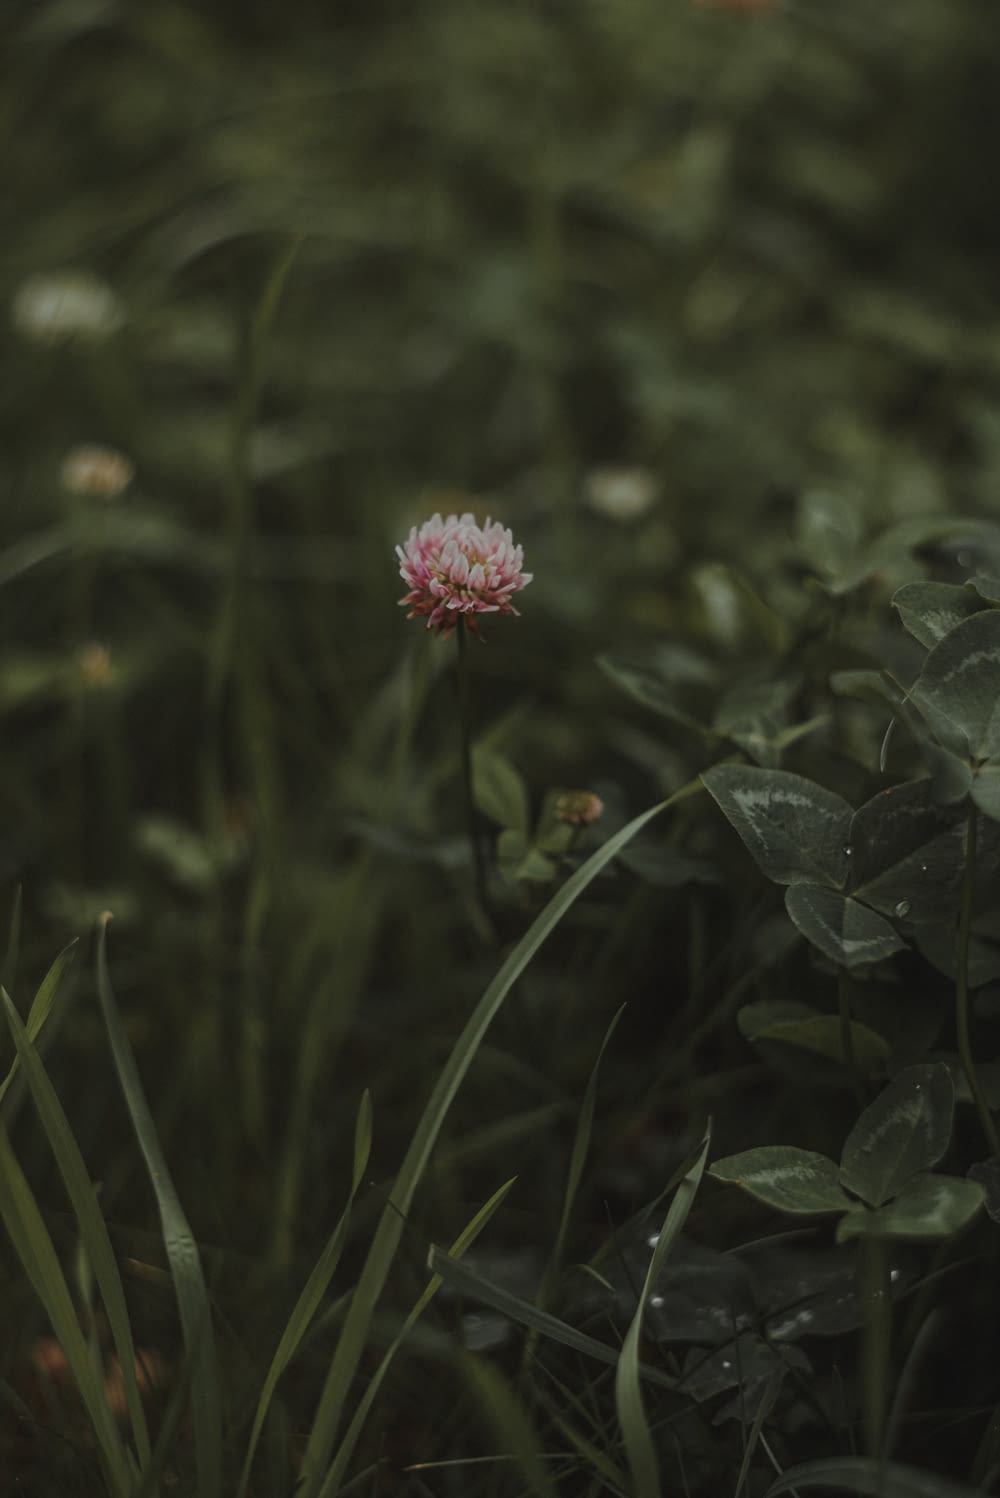 a flower in a field